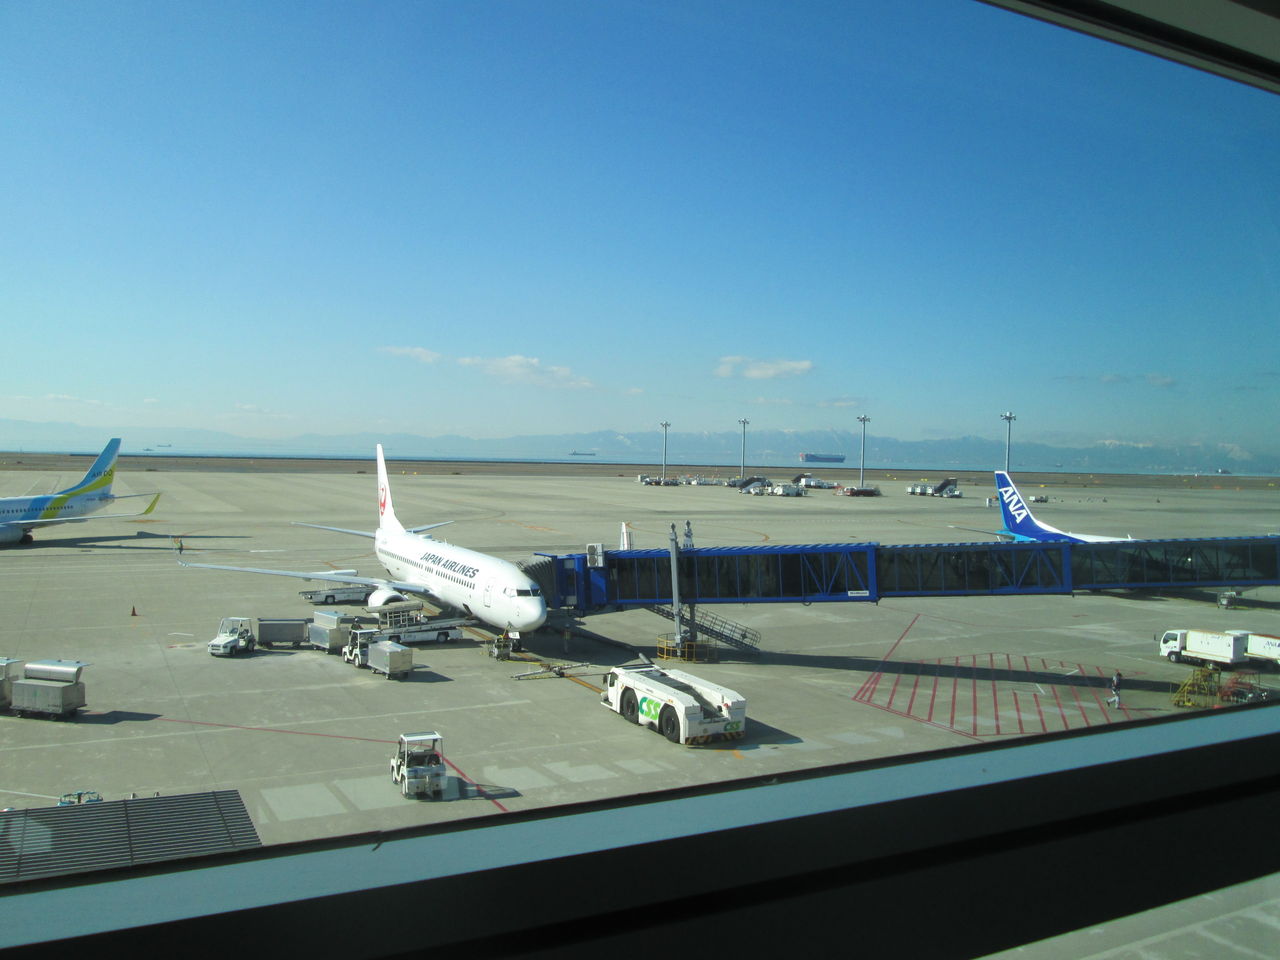 再び北海道に向かう 今度はセントレア空港から 日本アルプス遊覧飛行 優雅に空を飛びたい お得な旅でダイヤ会員へ